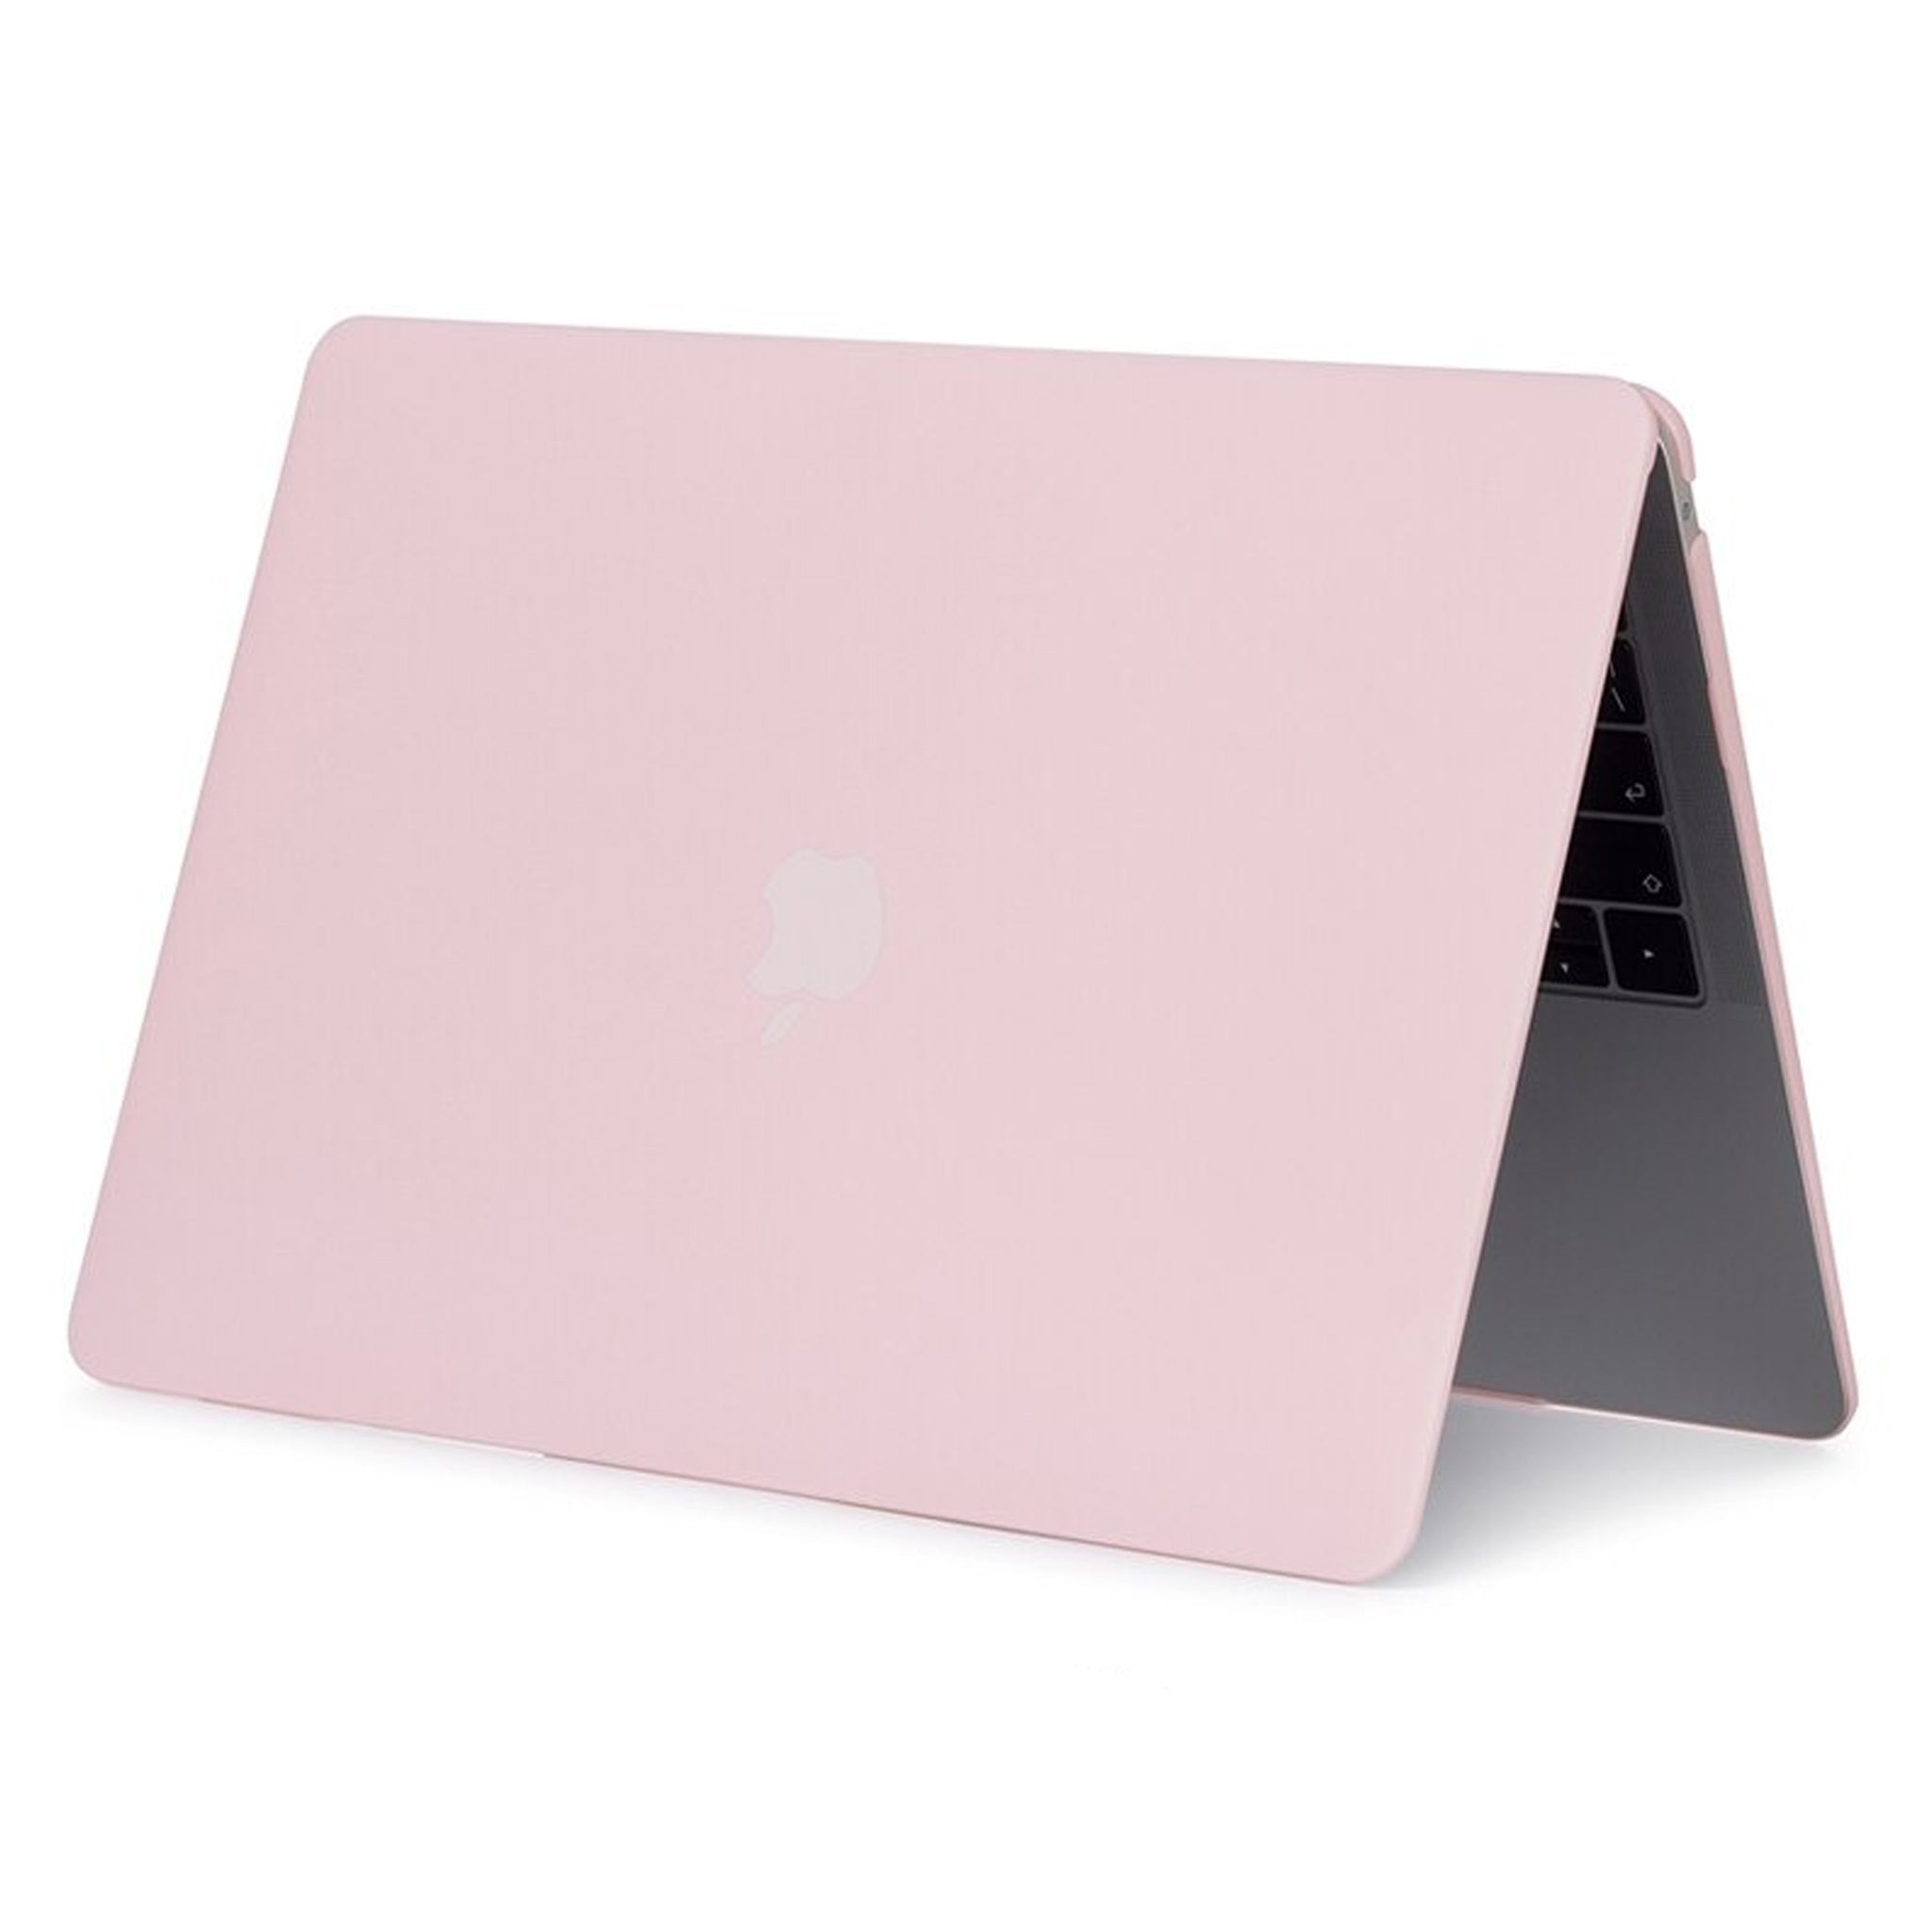 Coque de protection intégrale rigide pour MacBook Pro 15 A1286